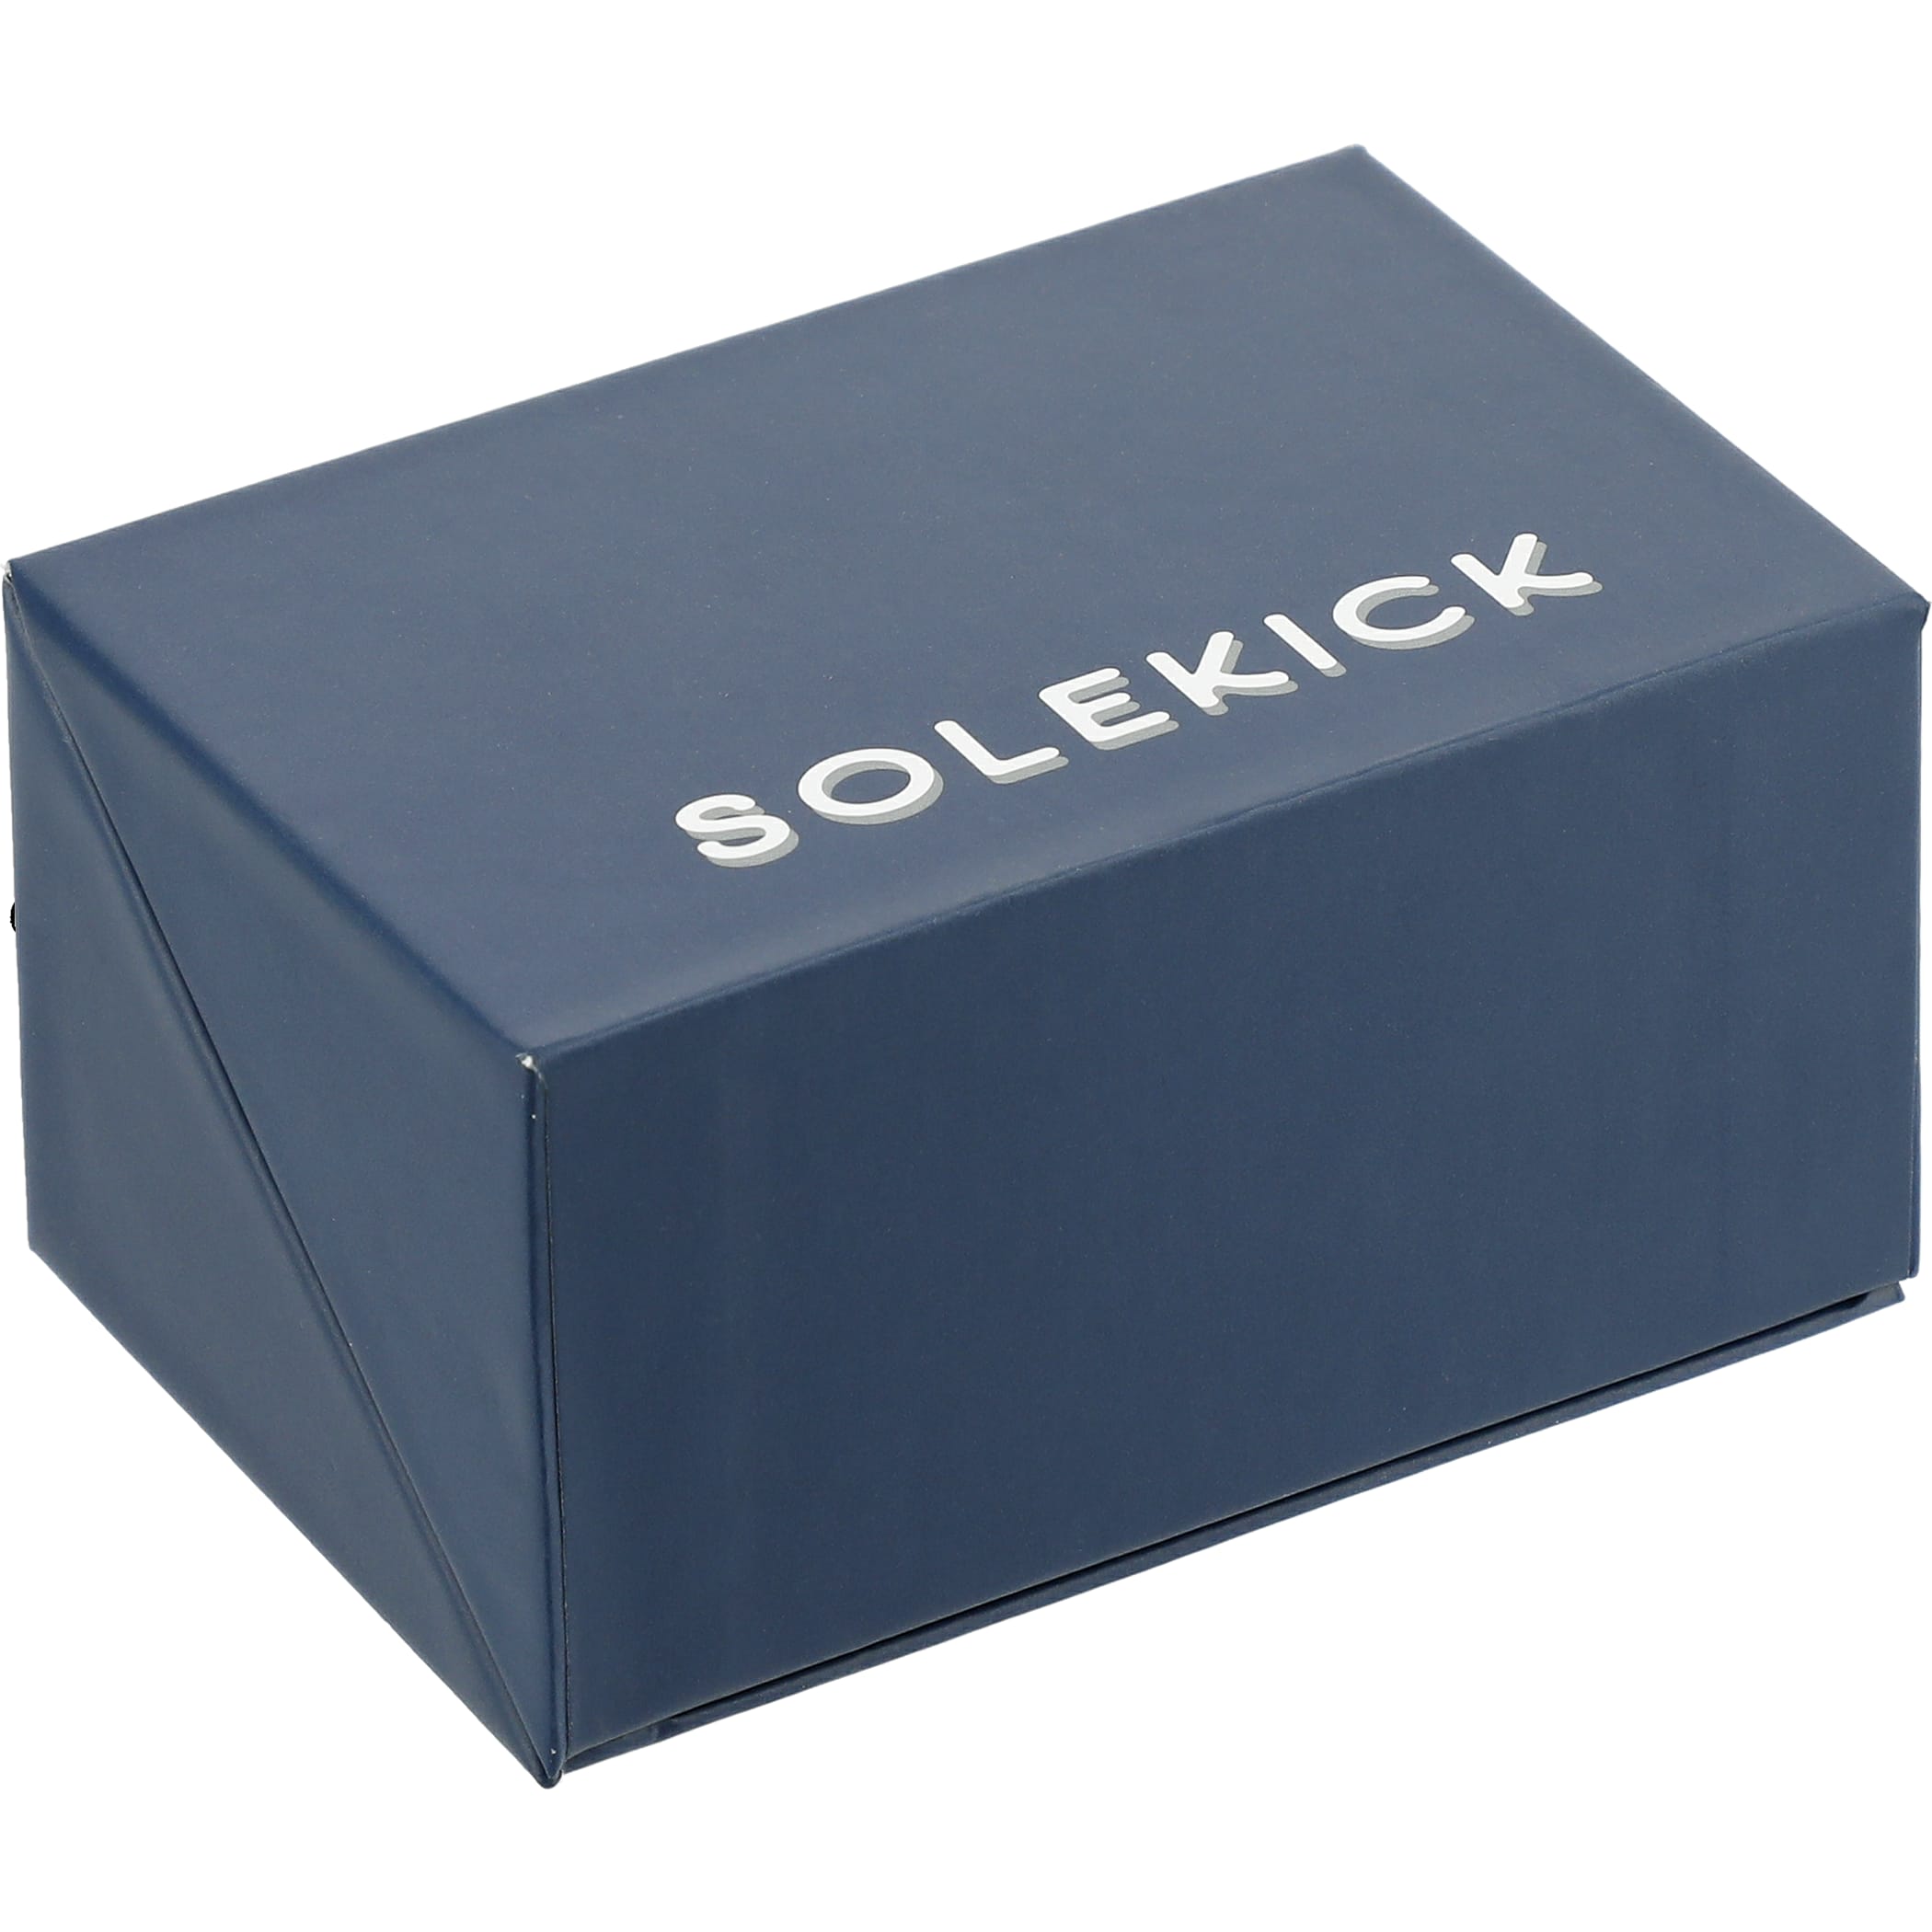 Solekick™ Quick Charge True Wireless Earbuds